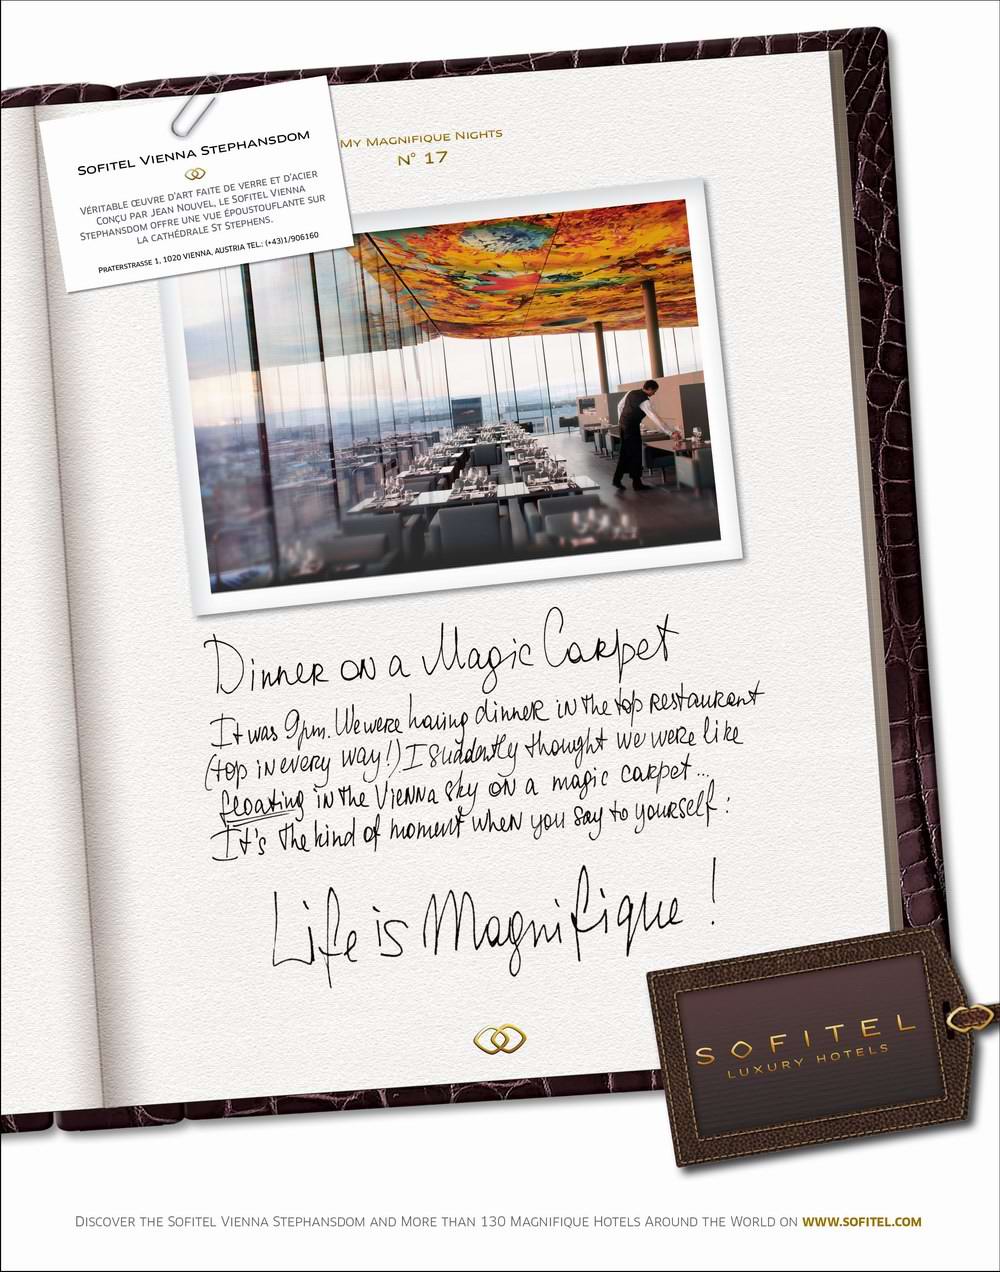 「生活无限精彩」（Life is Magnifique） 的信念贯穿整个索菲特奢华酒店品牌